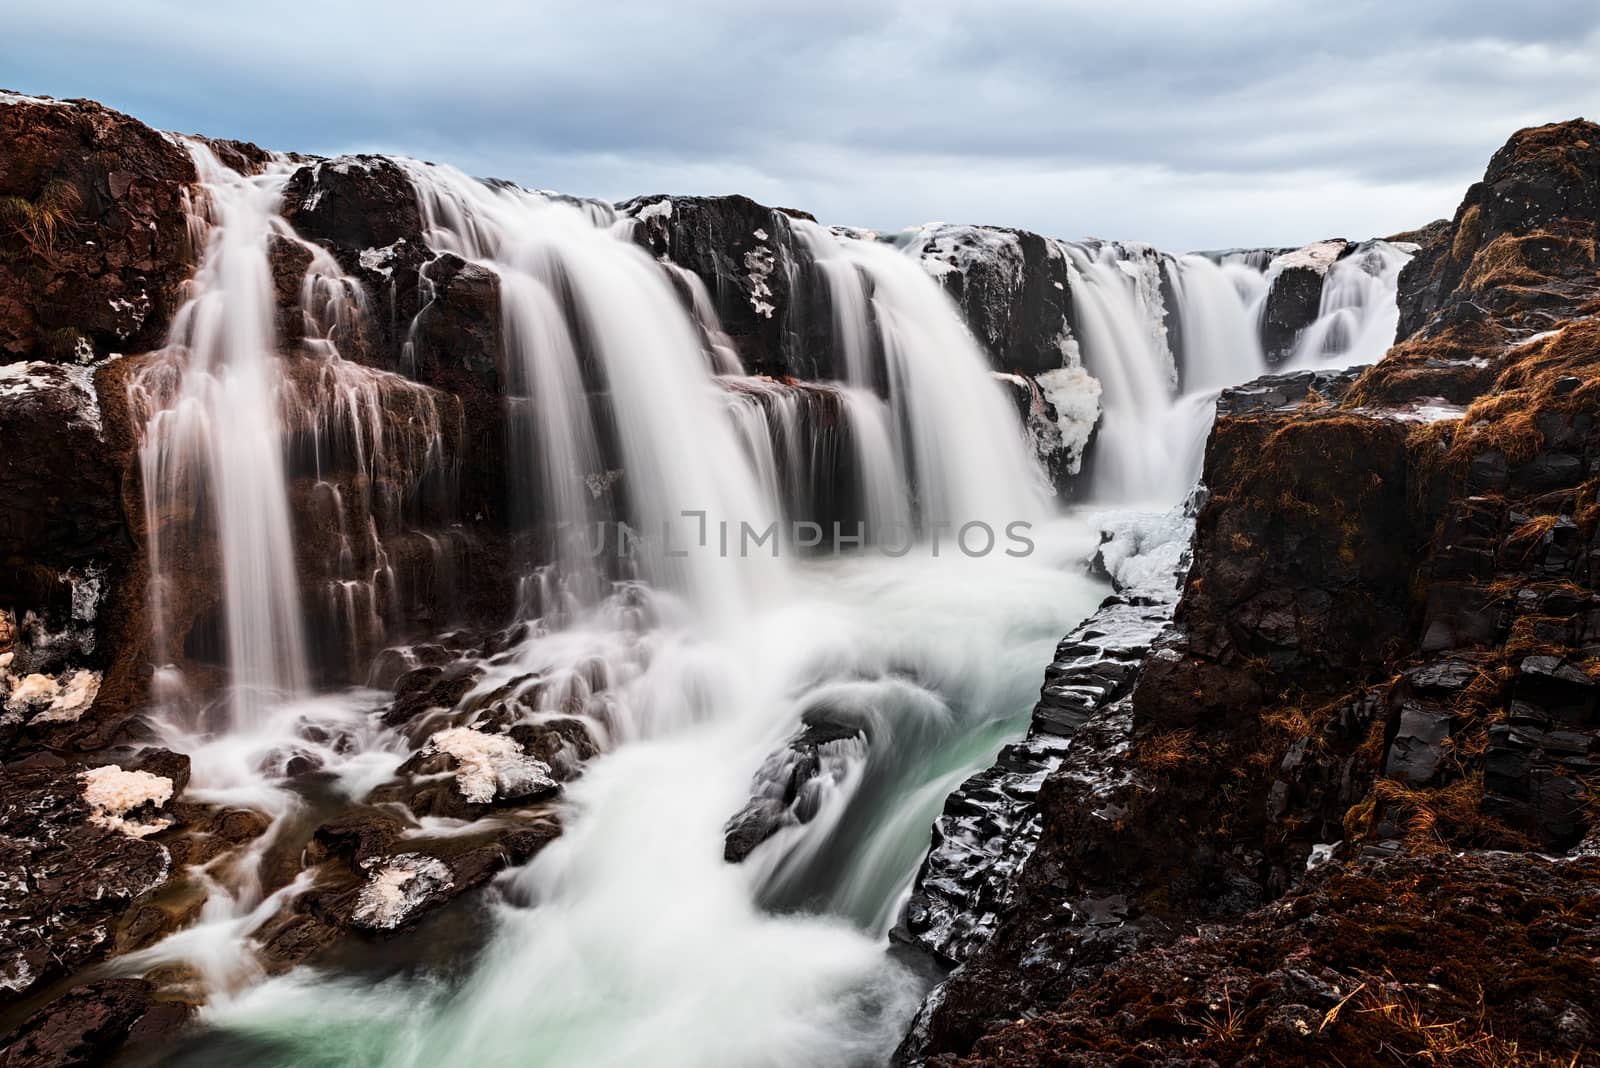 Closepu of Kolugljufur waterfall in Iceland in a cloudy day